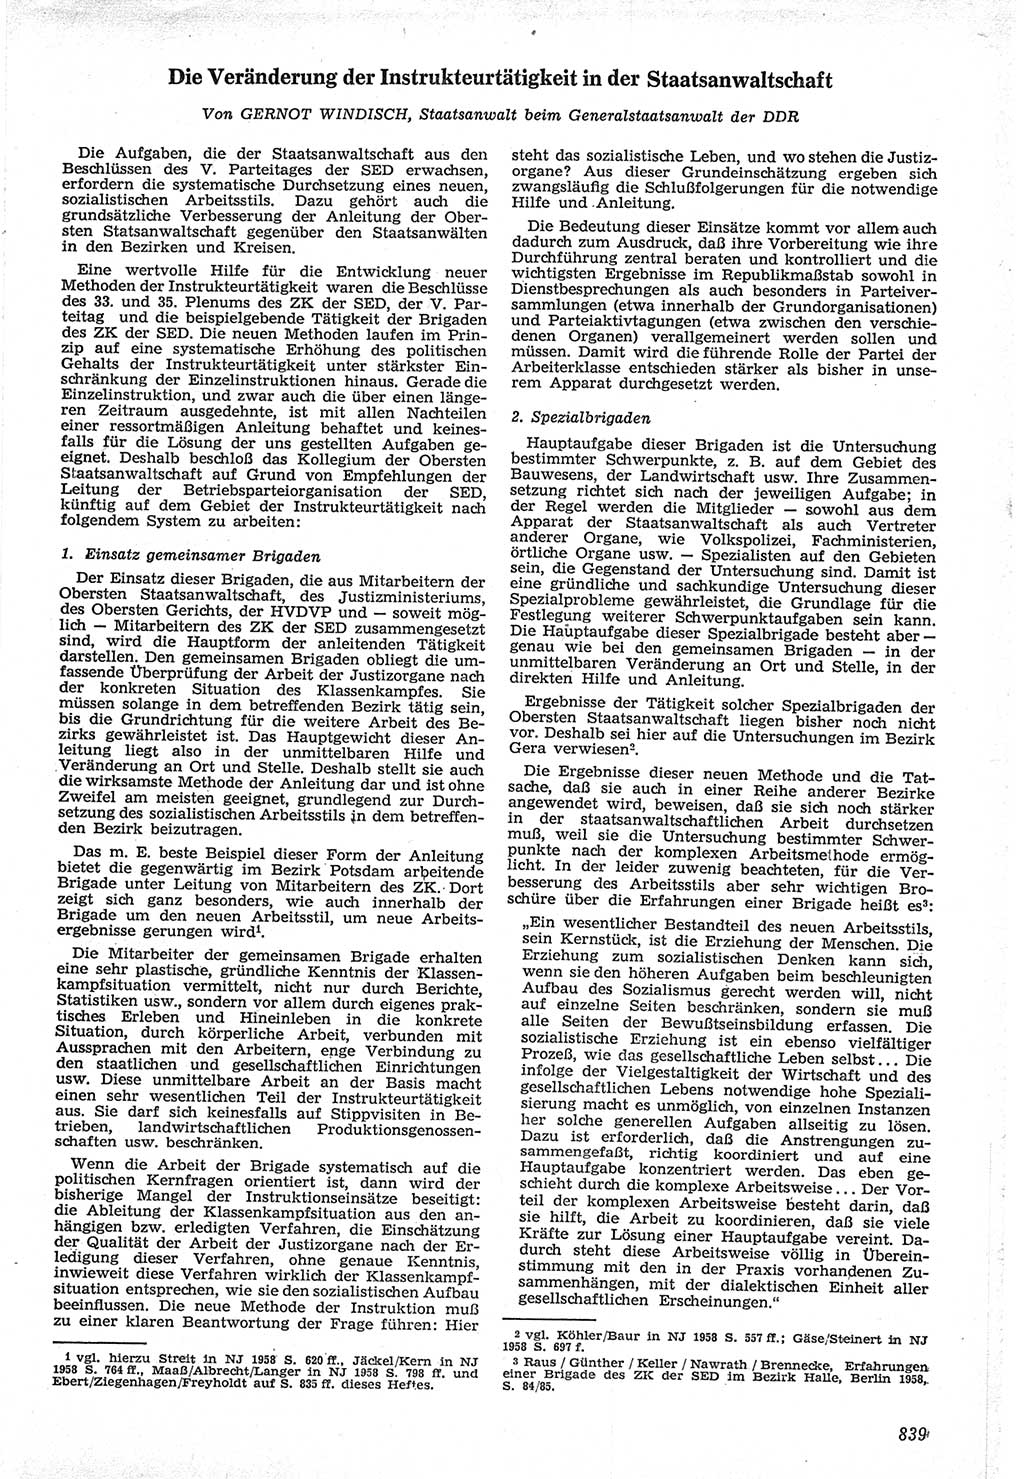 Neue Justiz (NJ), Zeitschrift für Recht und Rechtswissenschaft [Deutsche Demokratische Republik (DDR)], 12. Jahrgang 1958, Seite 839 (NJ DDR 1958, S. 839)